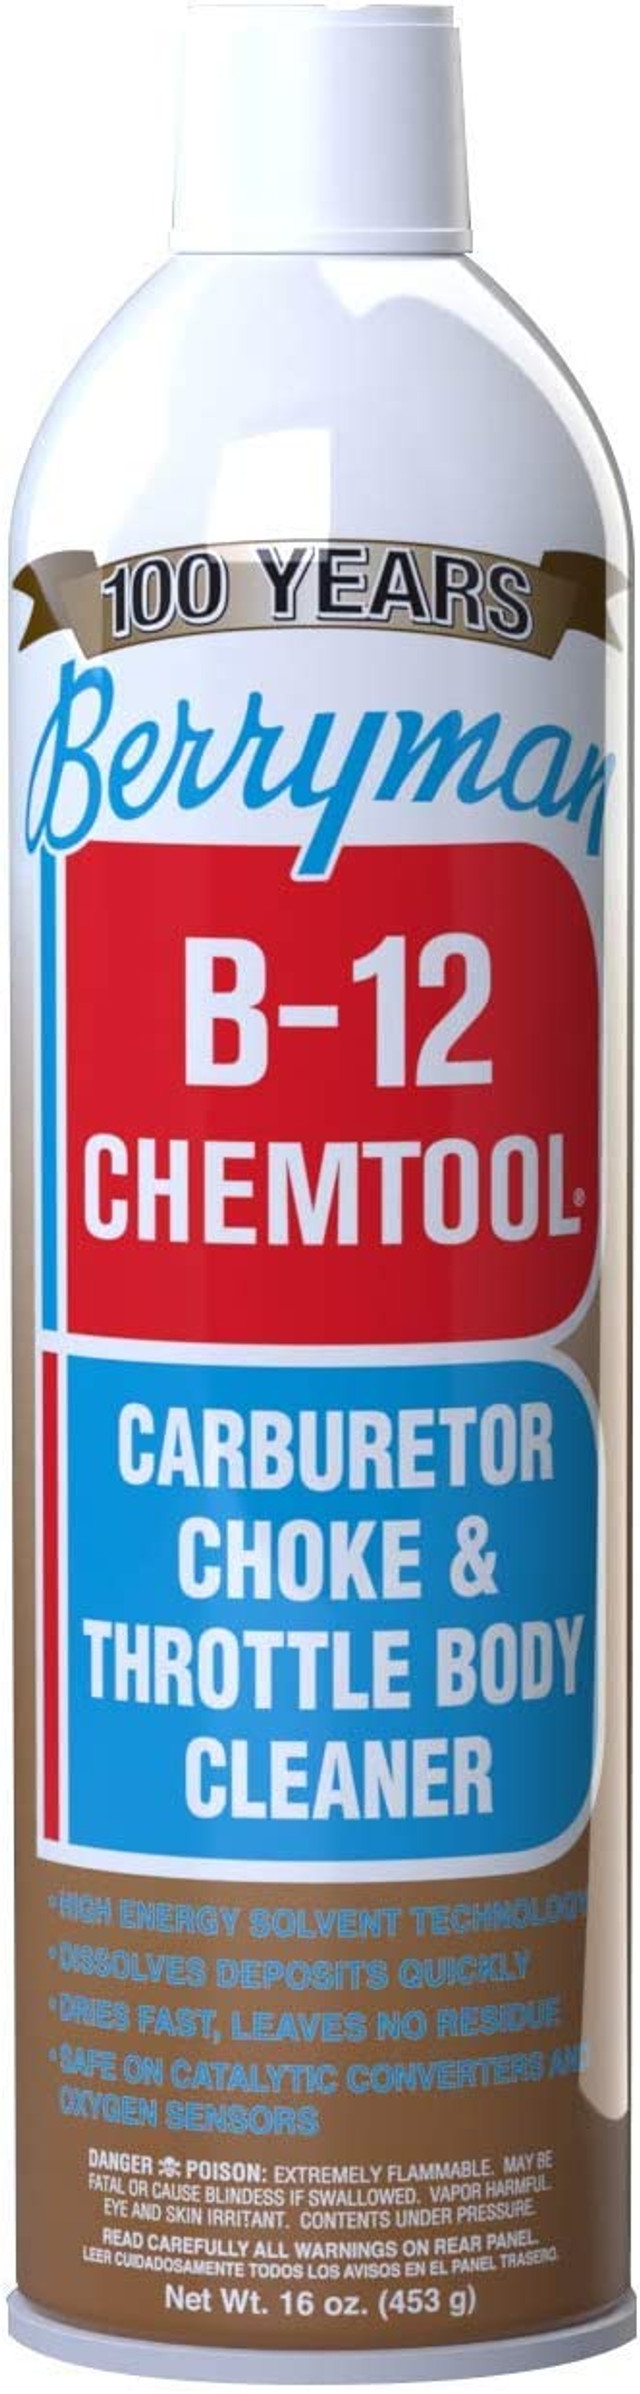 Limpiador de carburador chemtool BERRYMAN b-12 (0117)